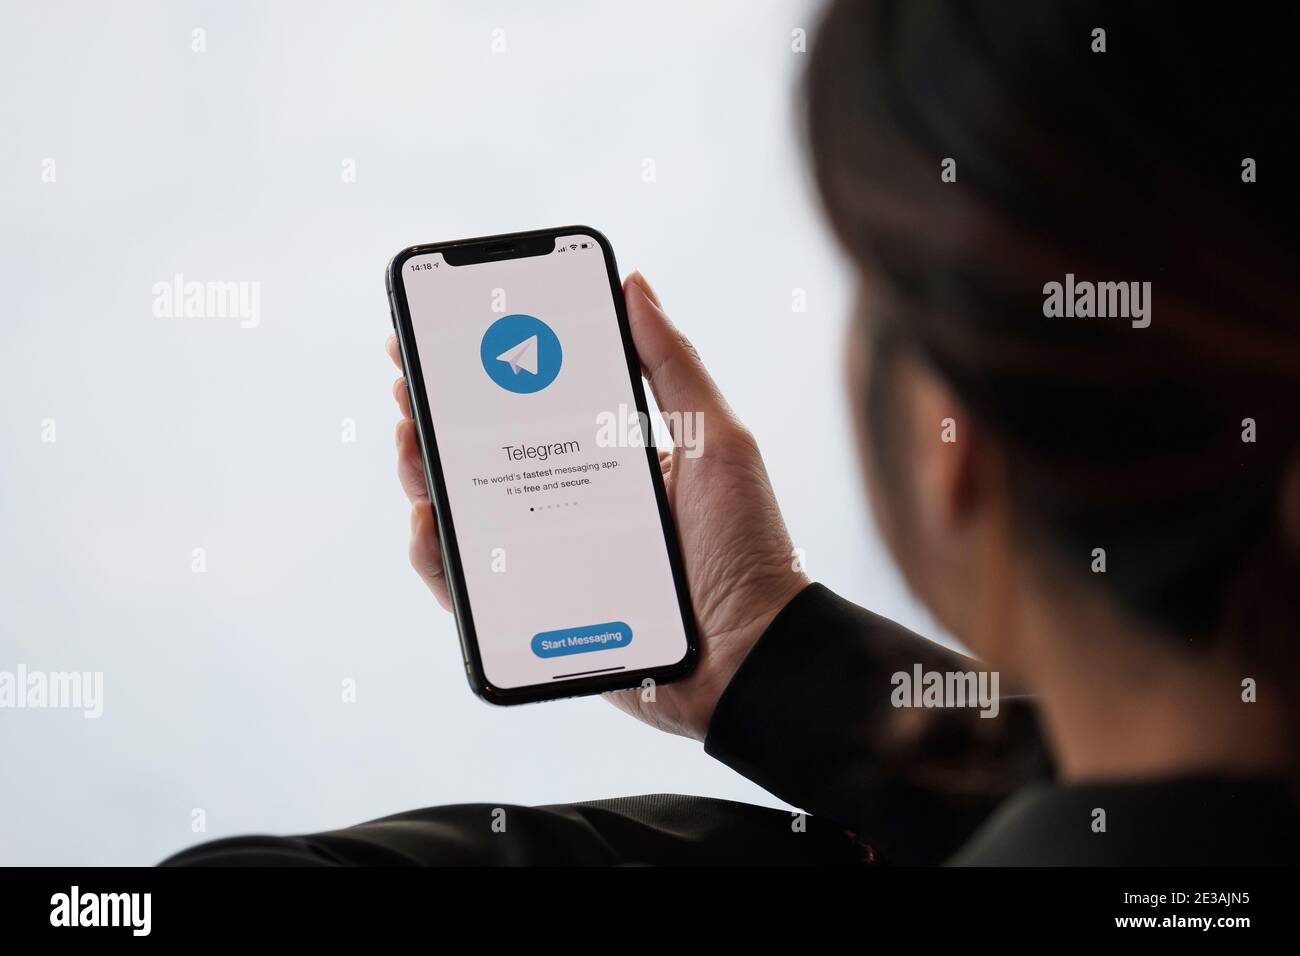 CHIANG MAI, THAILAND, JAN 18, 2021 : Frau Hand hält iPhone 12 mit Social-Networking-Service Telegram auf dem Bildschirm. IPhone 12 wurde erstellt und Stockfoto